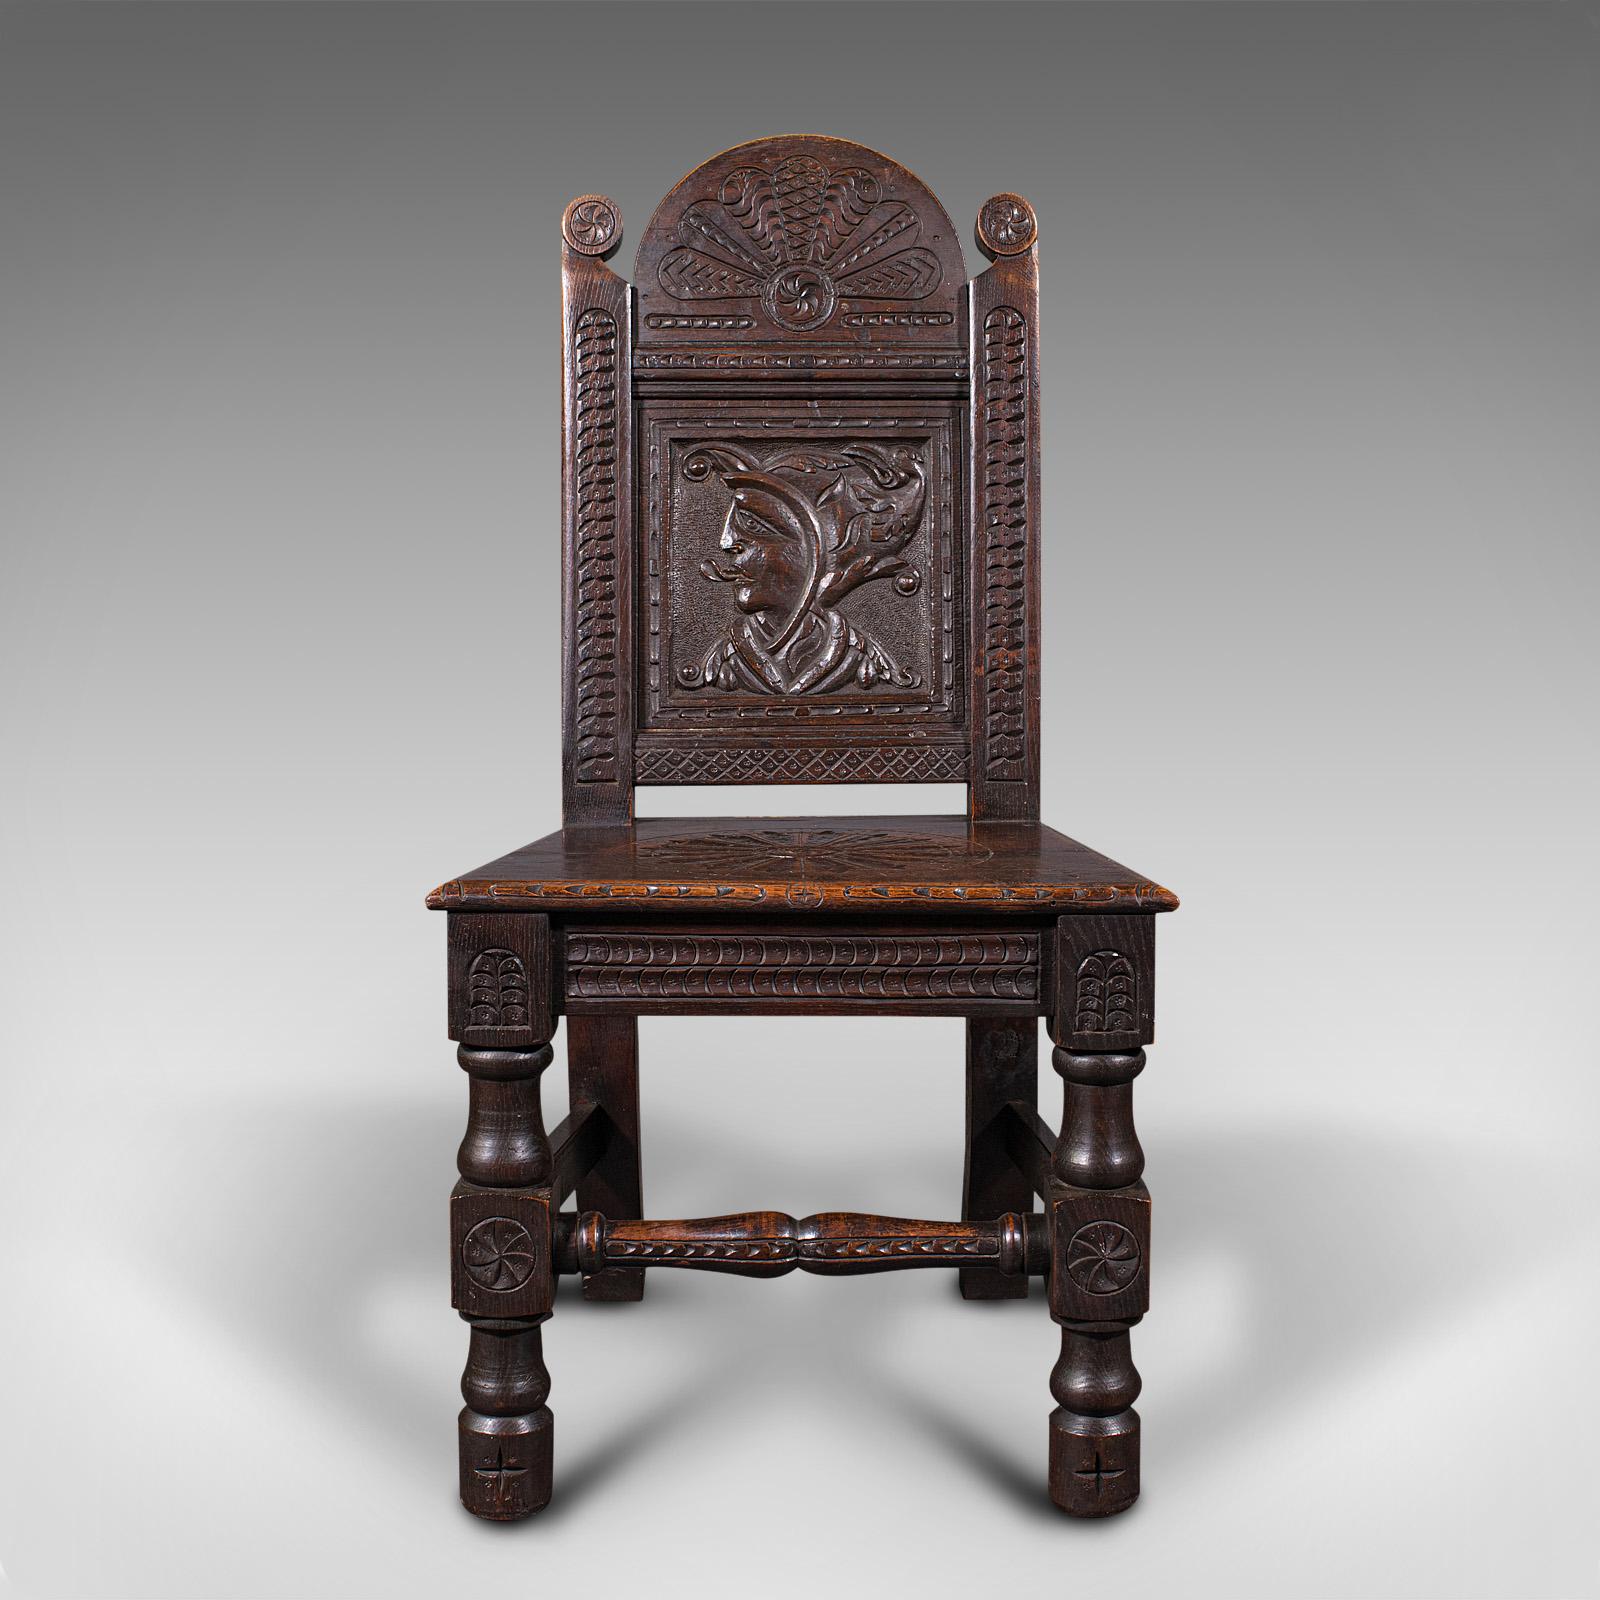 Il s'agit d'une paire de chaises de cour vénitiennes anciennes. Siège décoratif italien en chêne sculpté à la main, datant de la période victorienne, vers 1890.

Des chaises fascinantes, avec des détails qui attirent l'attention.
Présente une